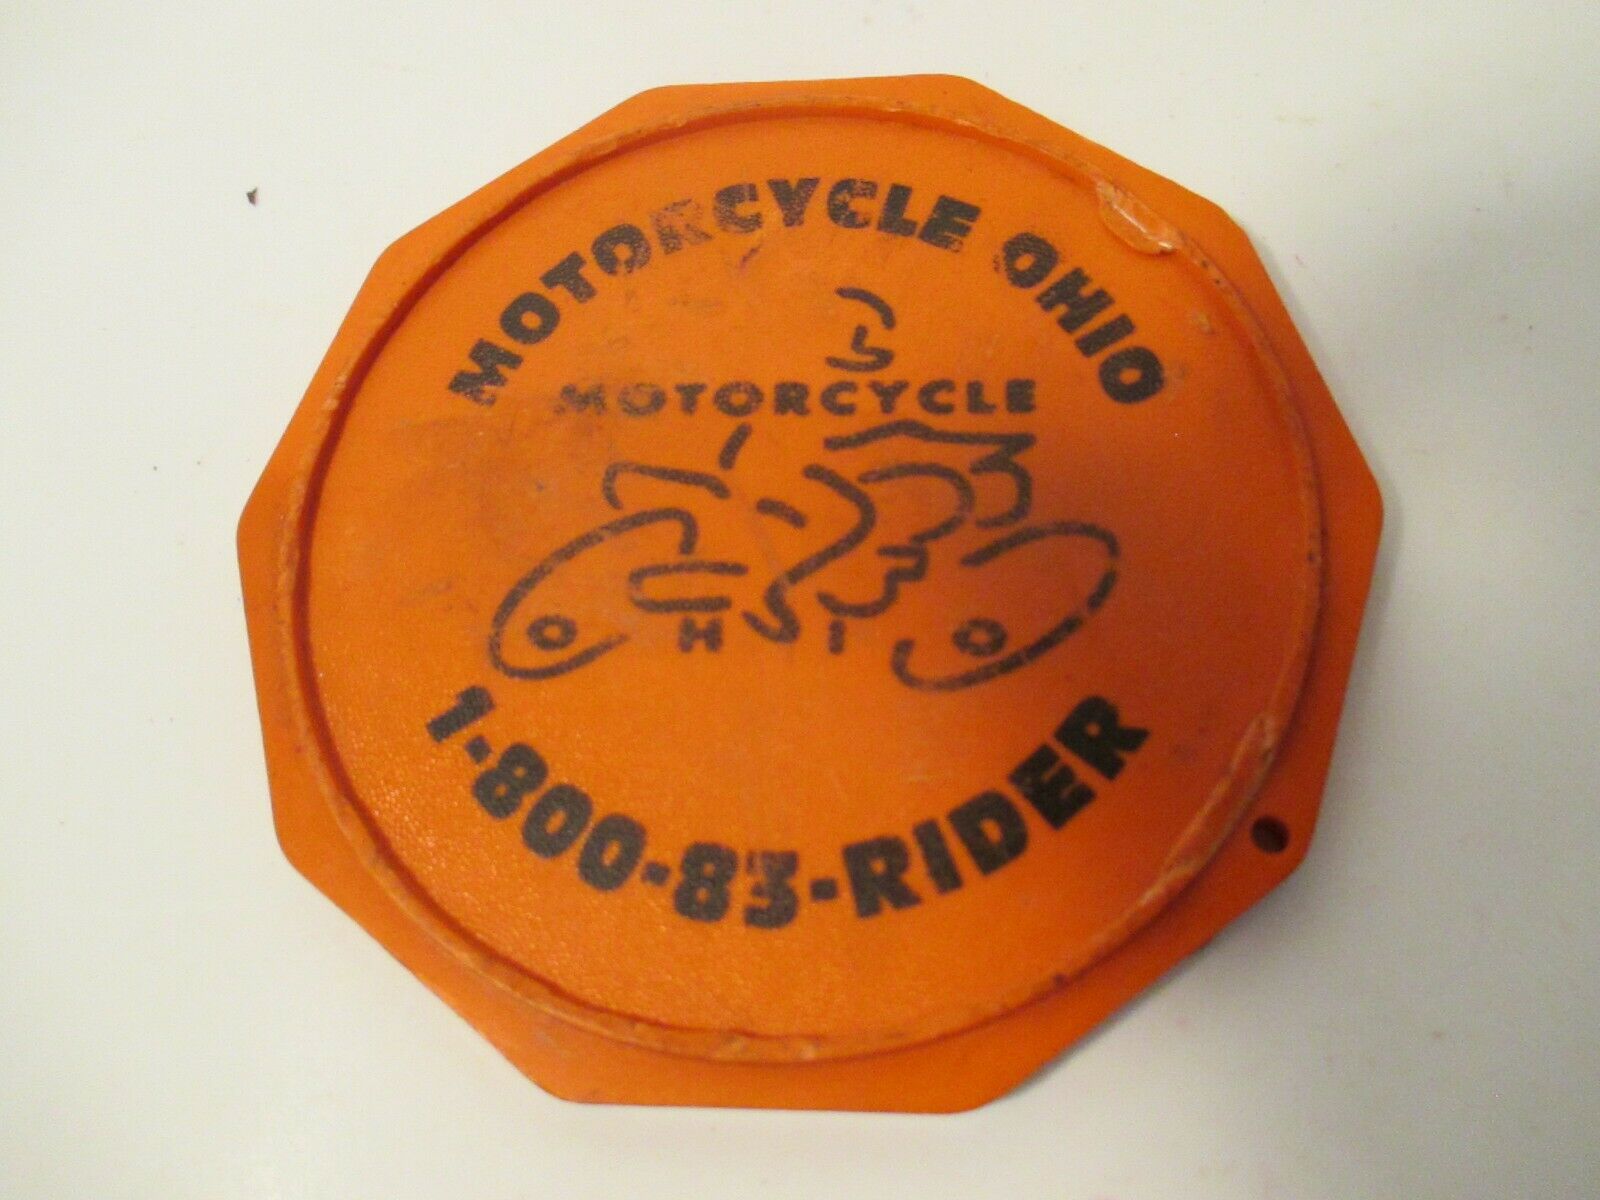 Motorcycle Coaster.com Orange Motorcycle Ohio Ride Smart Vintage